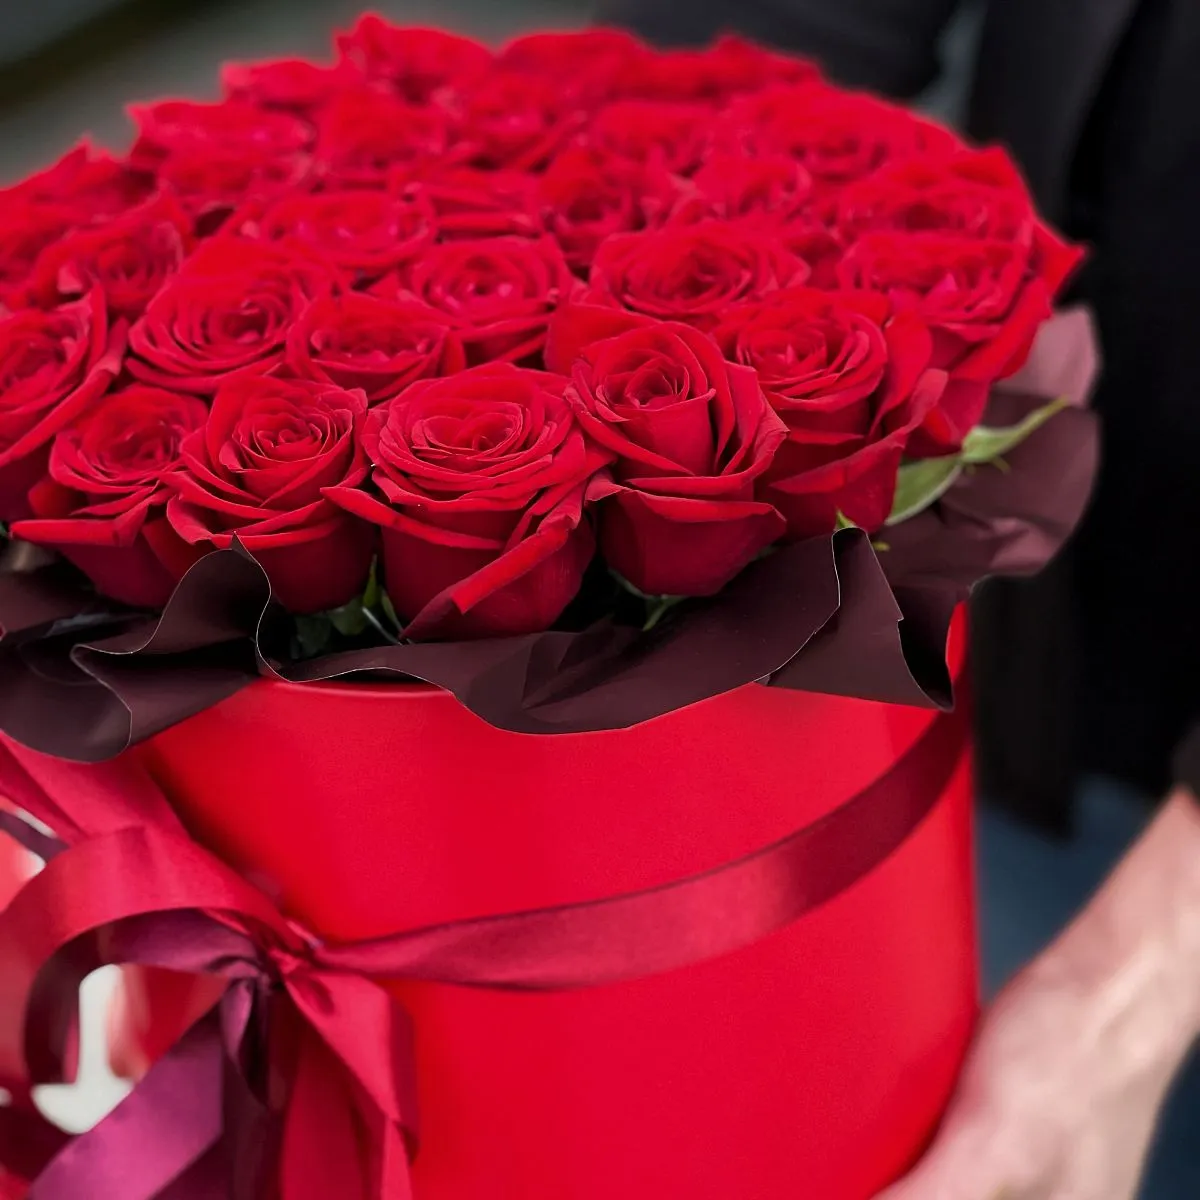 39 красных роз (40 см)